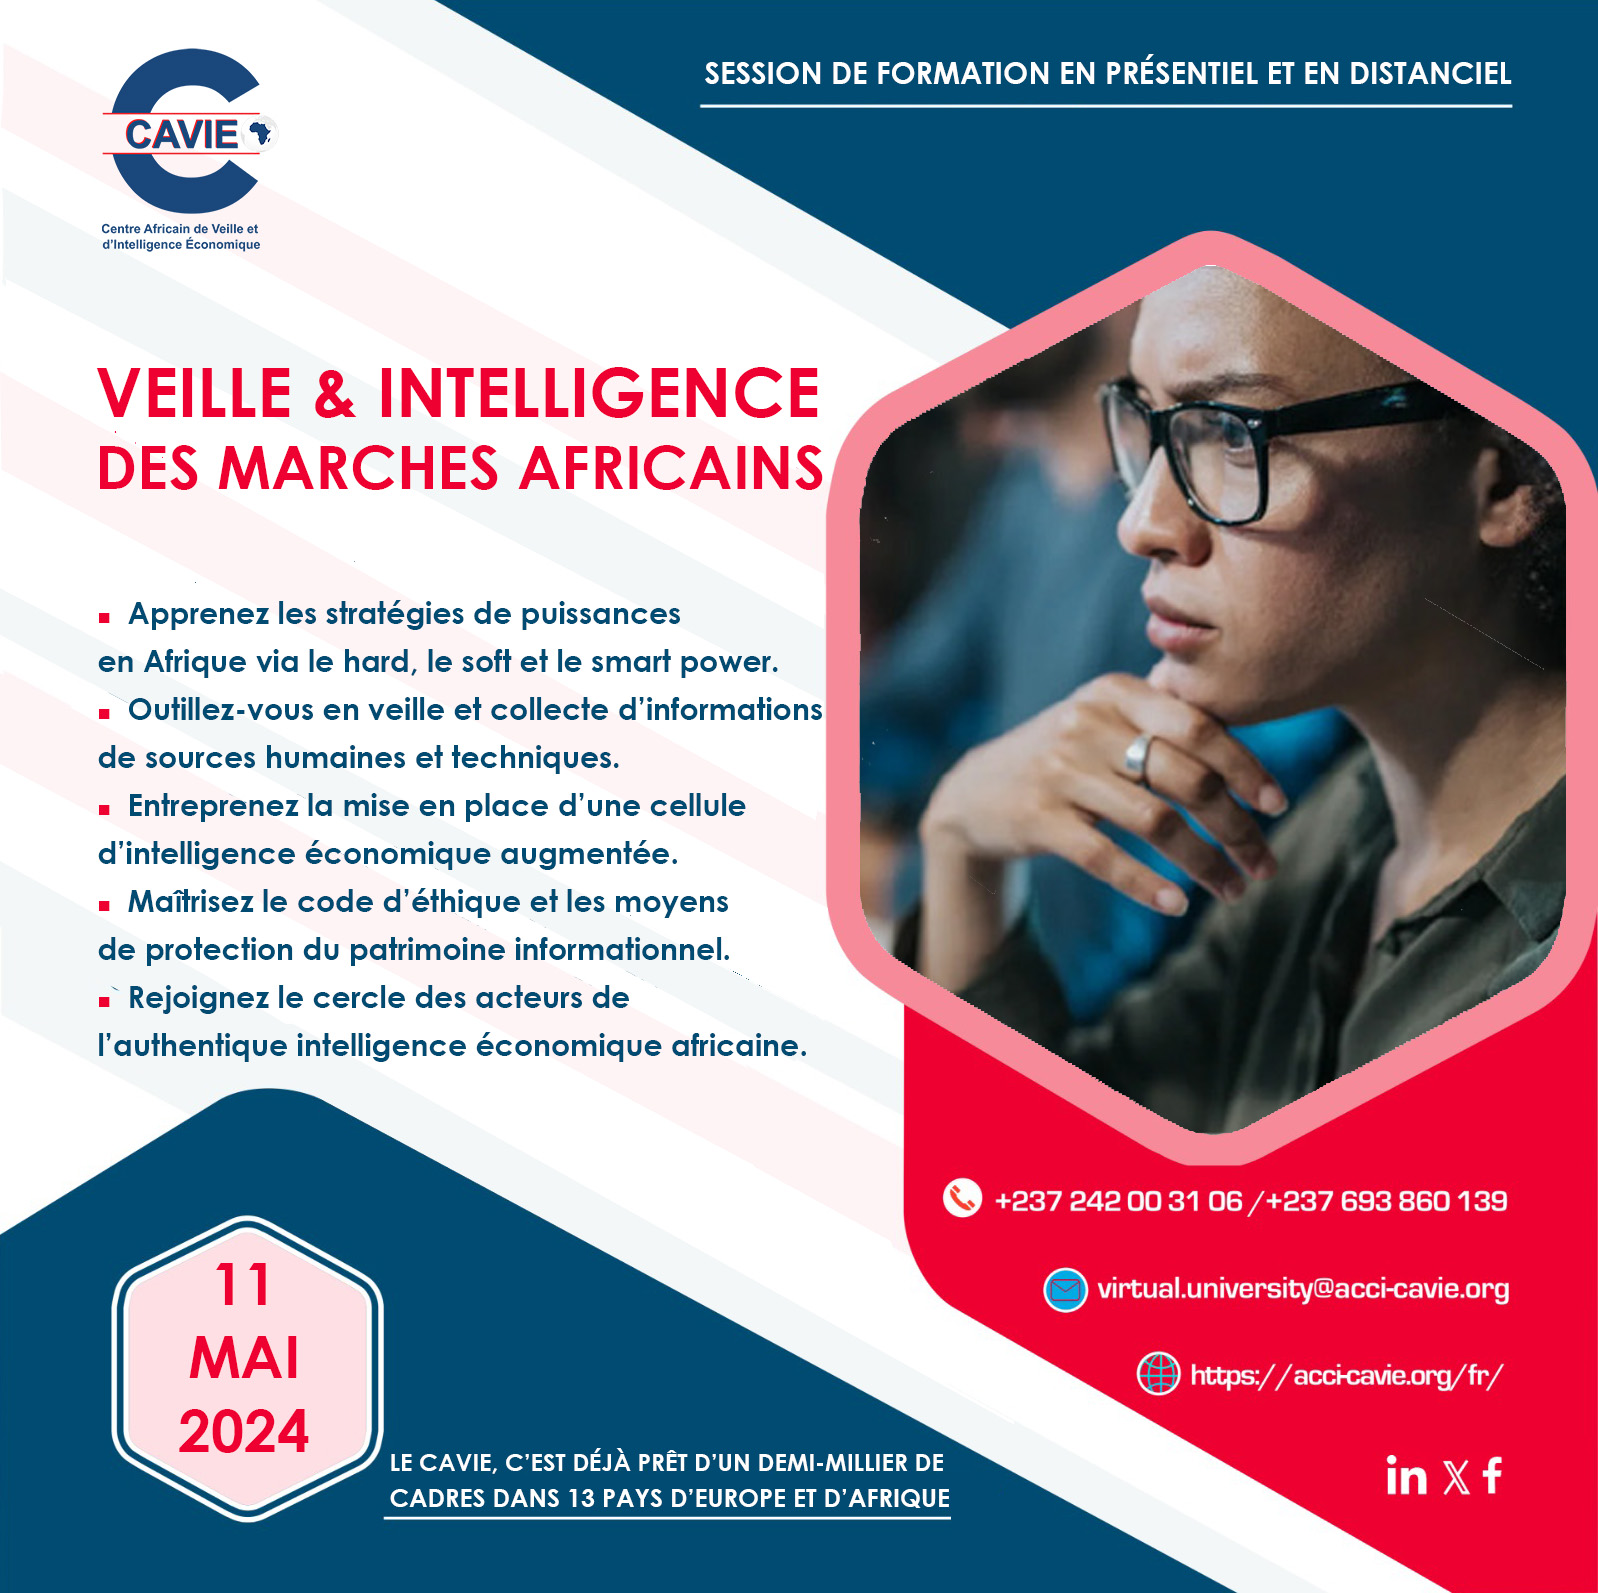 Lire la suite à propos de l’article Veille & intelligence des marches africains, le 11 mai 2024 en ligne et en présentiel